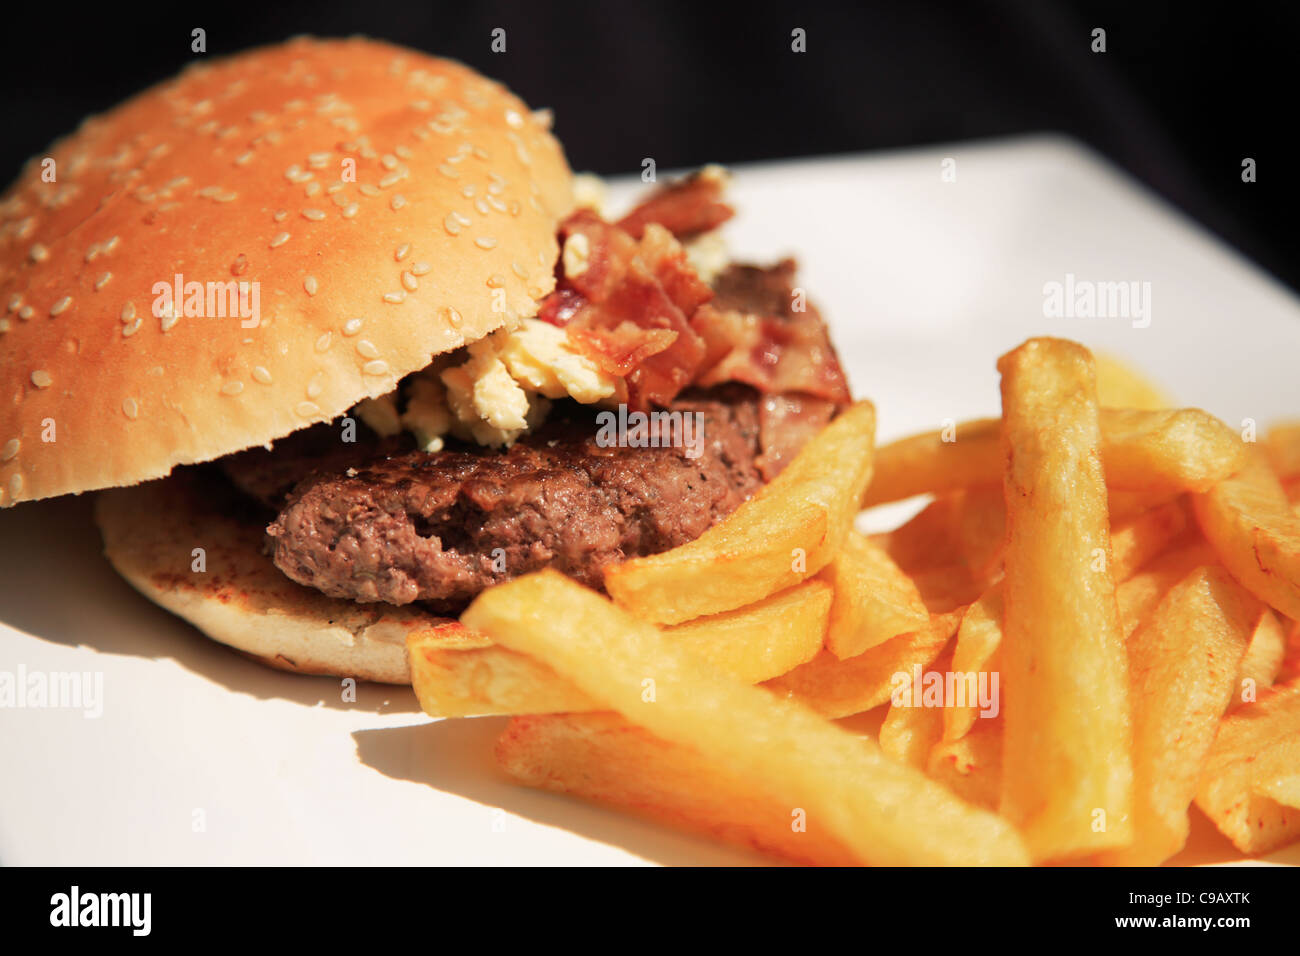 Blue cheese e bacon burger su una piastra bianca, shot utilizzando una profondità di campo ridotta Foto Stock